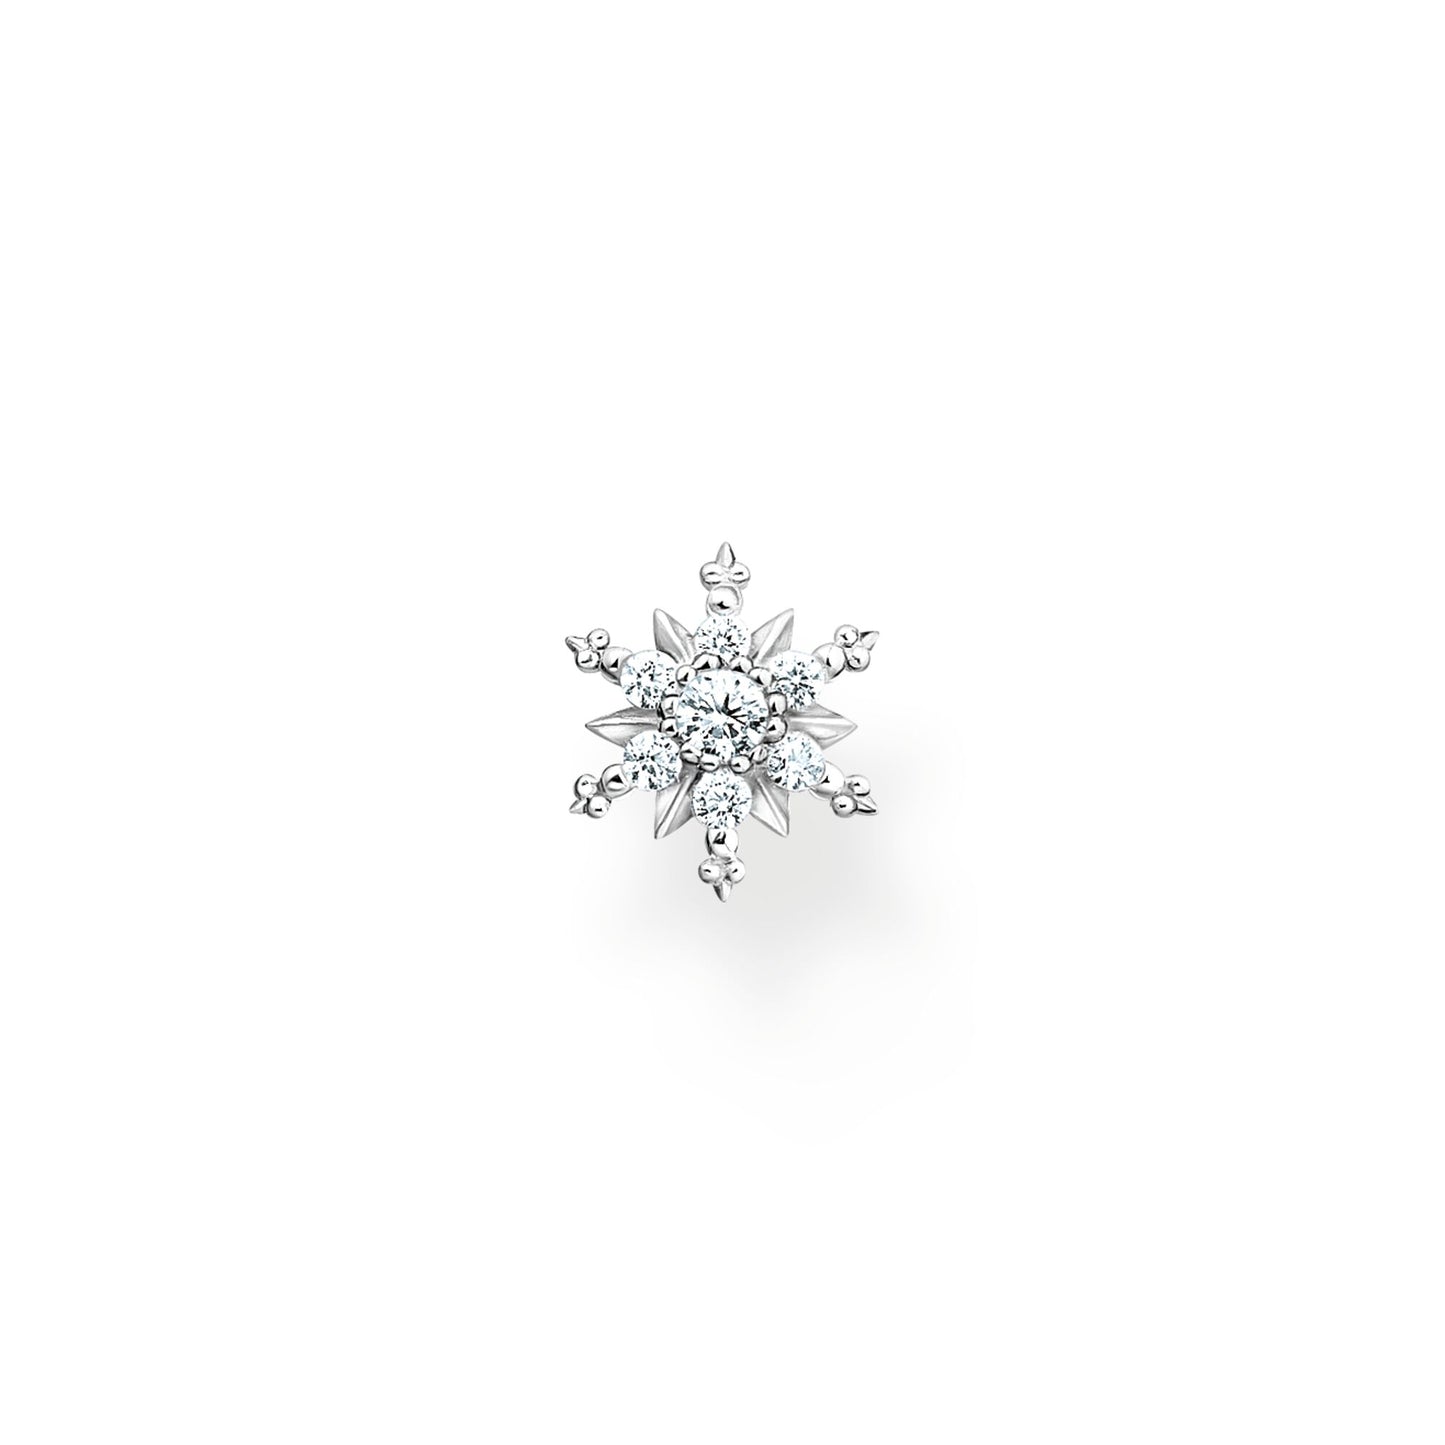 THOMAS SABO Single ear stud snowflake with white stones silver